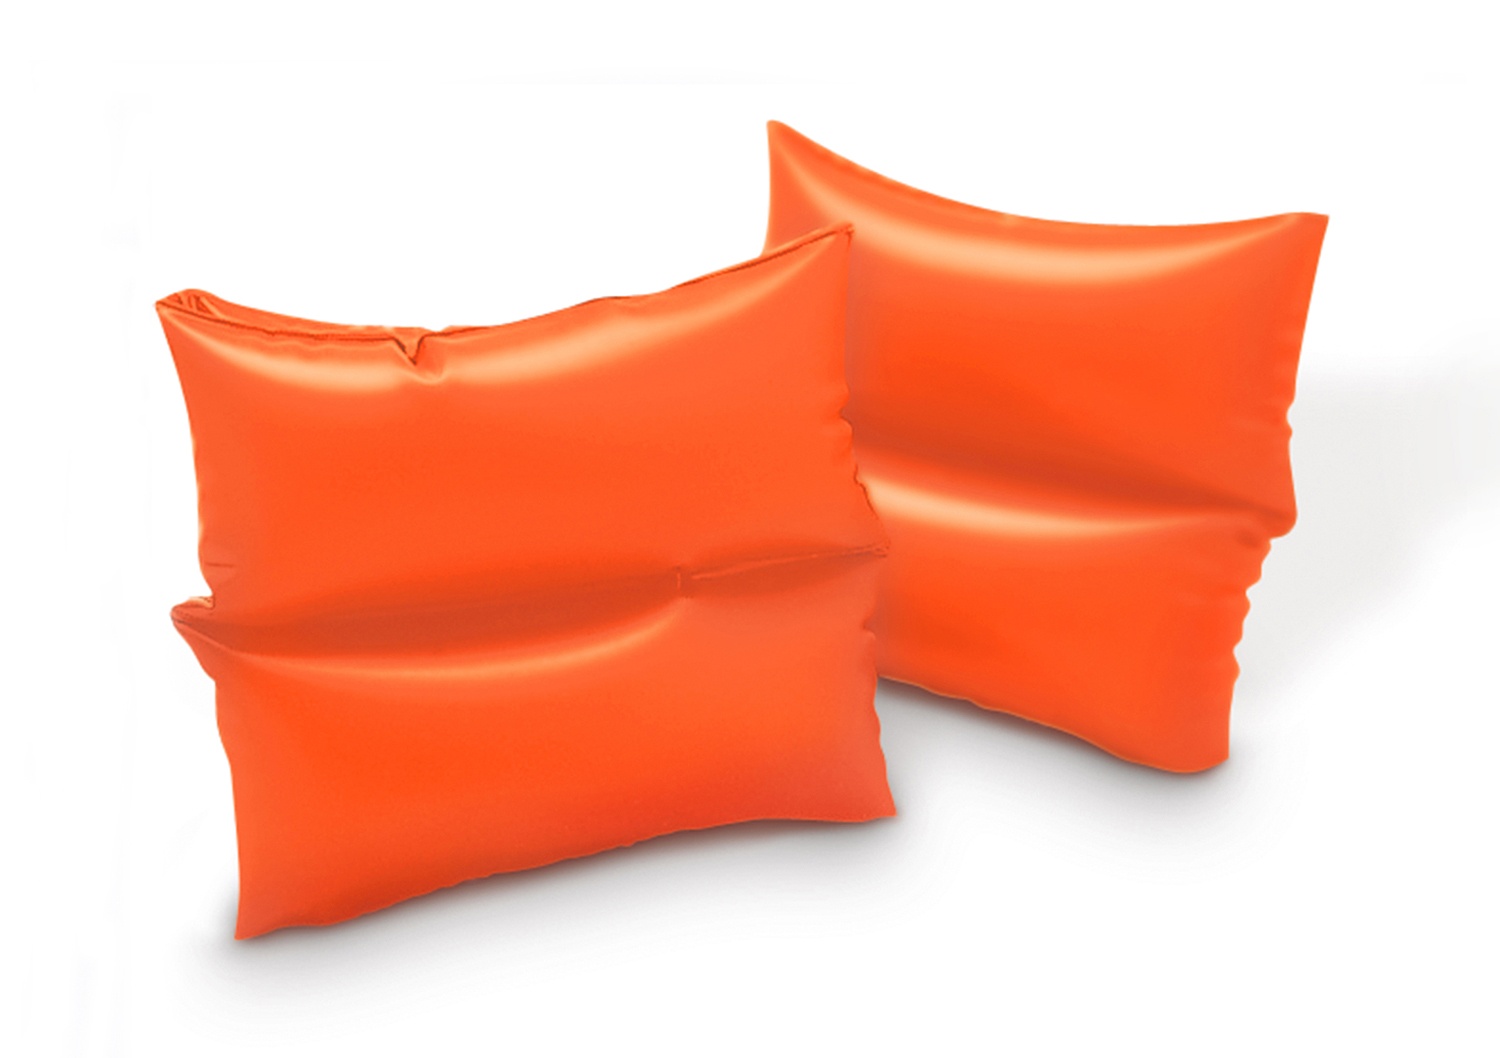 Нарукавники надувные Intex оранжевые Arm Bands (Маленькие), 3-6 лет,19х19 см нарукавники надувные intex arm bands int59640np